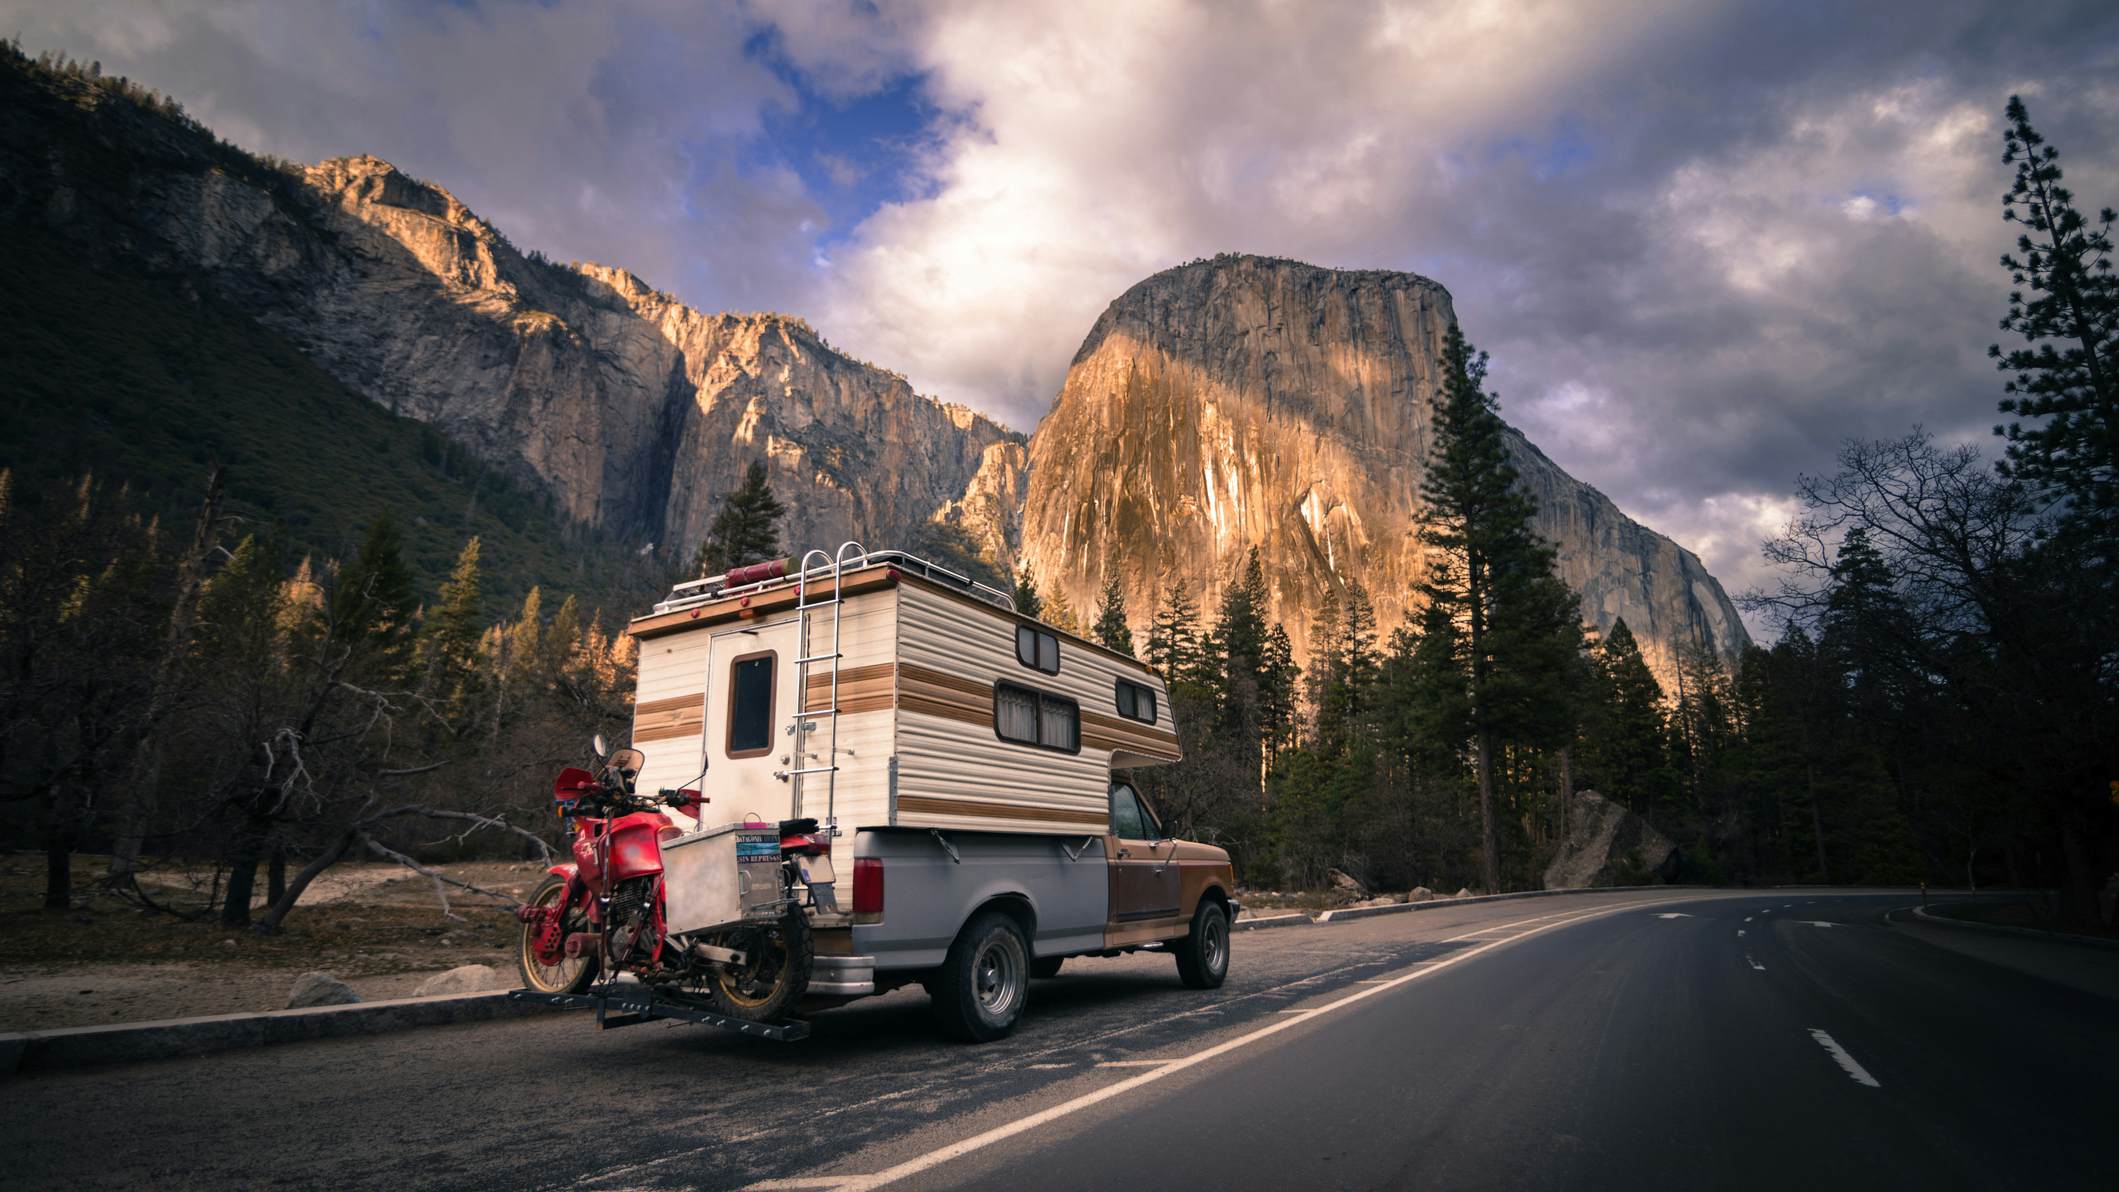 10 best US states to visit in a camper van